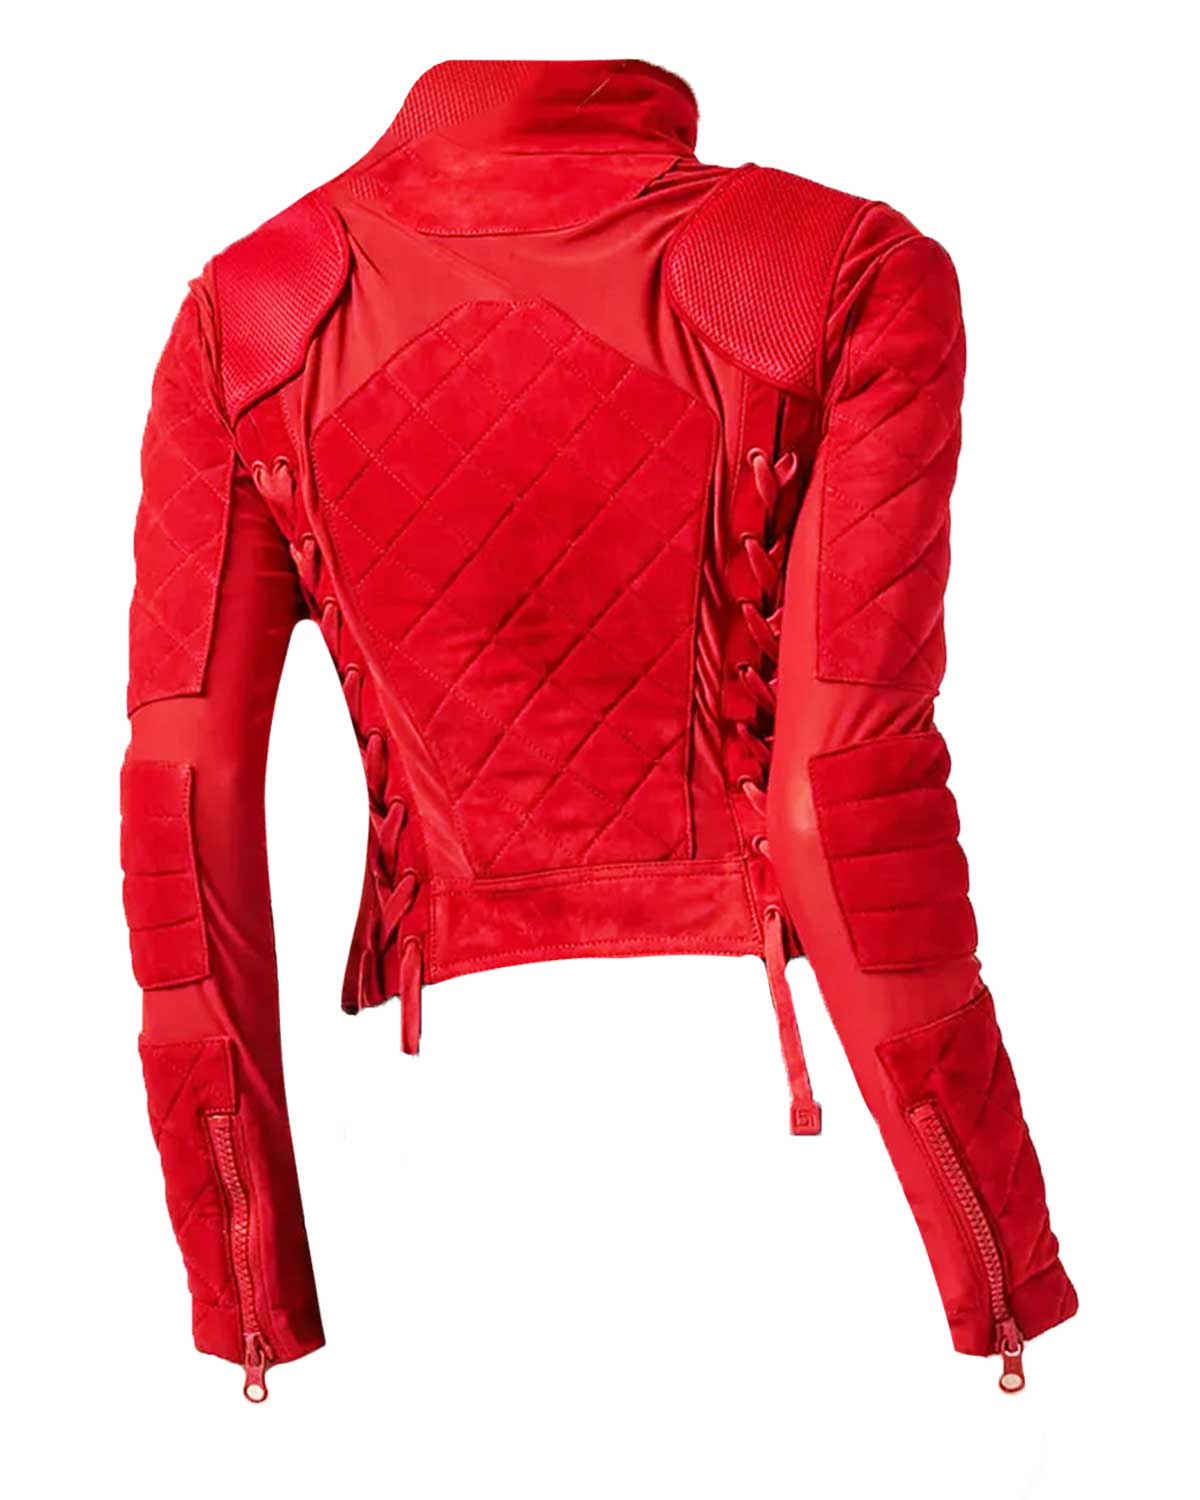 Bayley WWE Pamela Marinez Red Suede Jacket | Elite Jacket